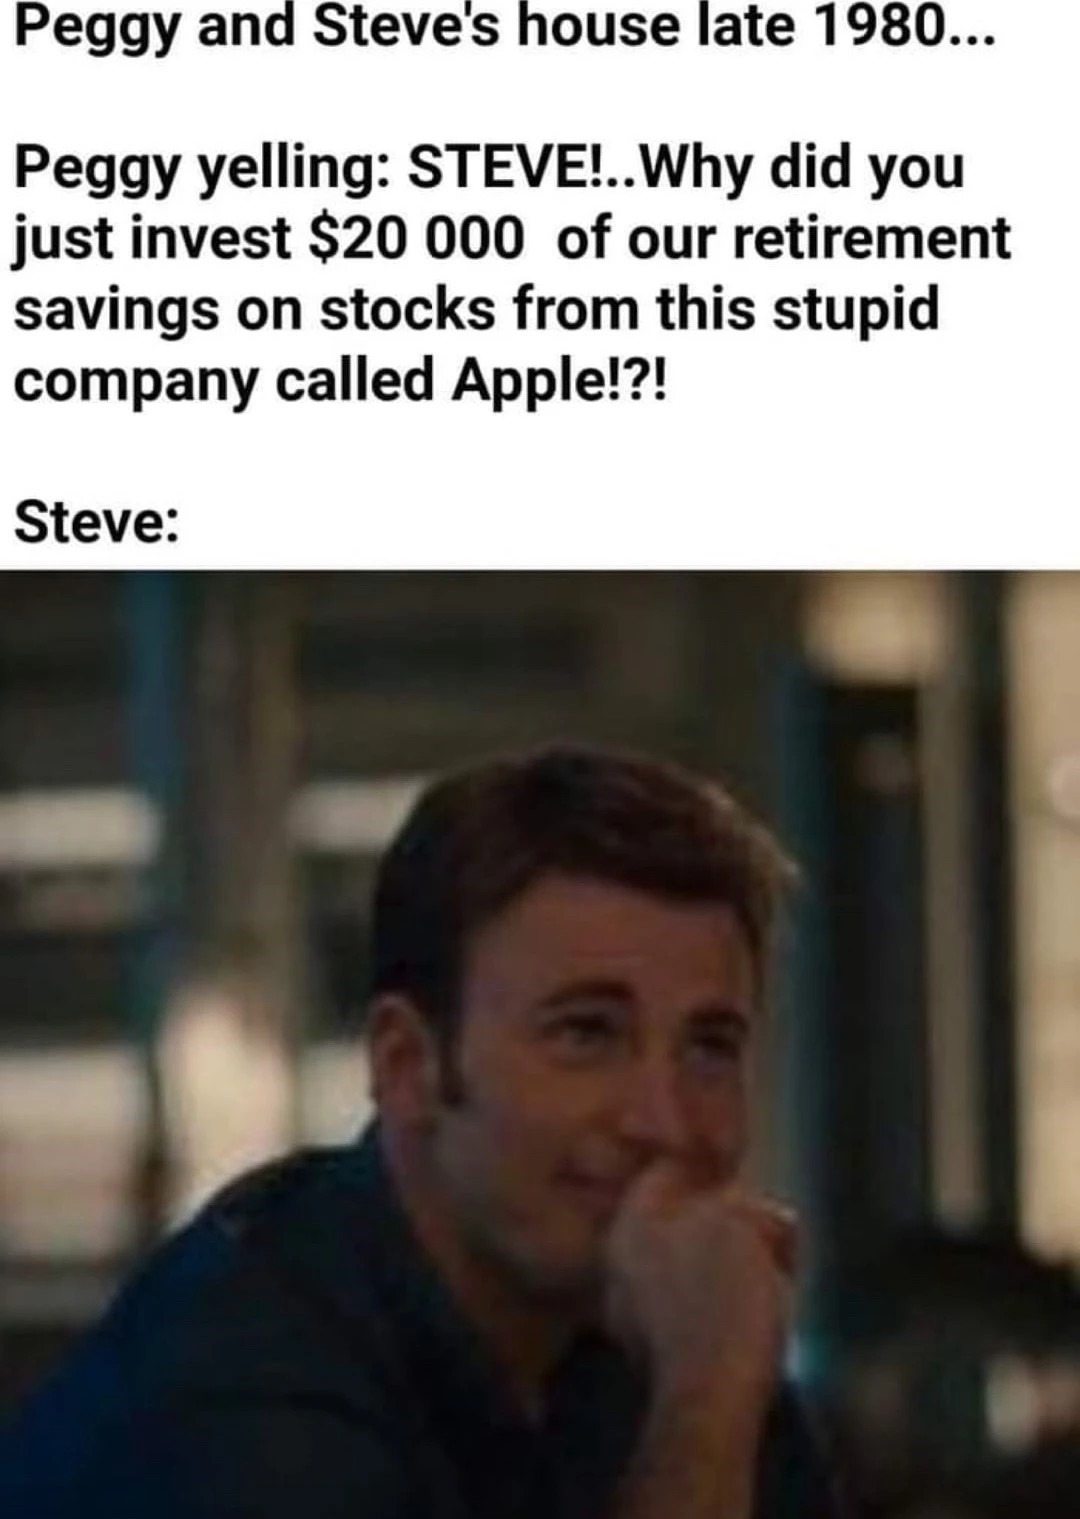 Steve stonks - meme